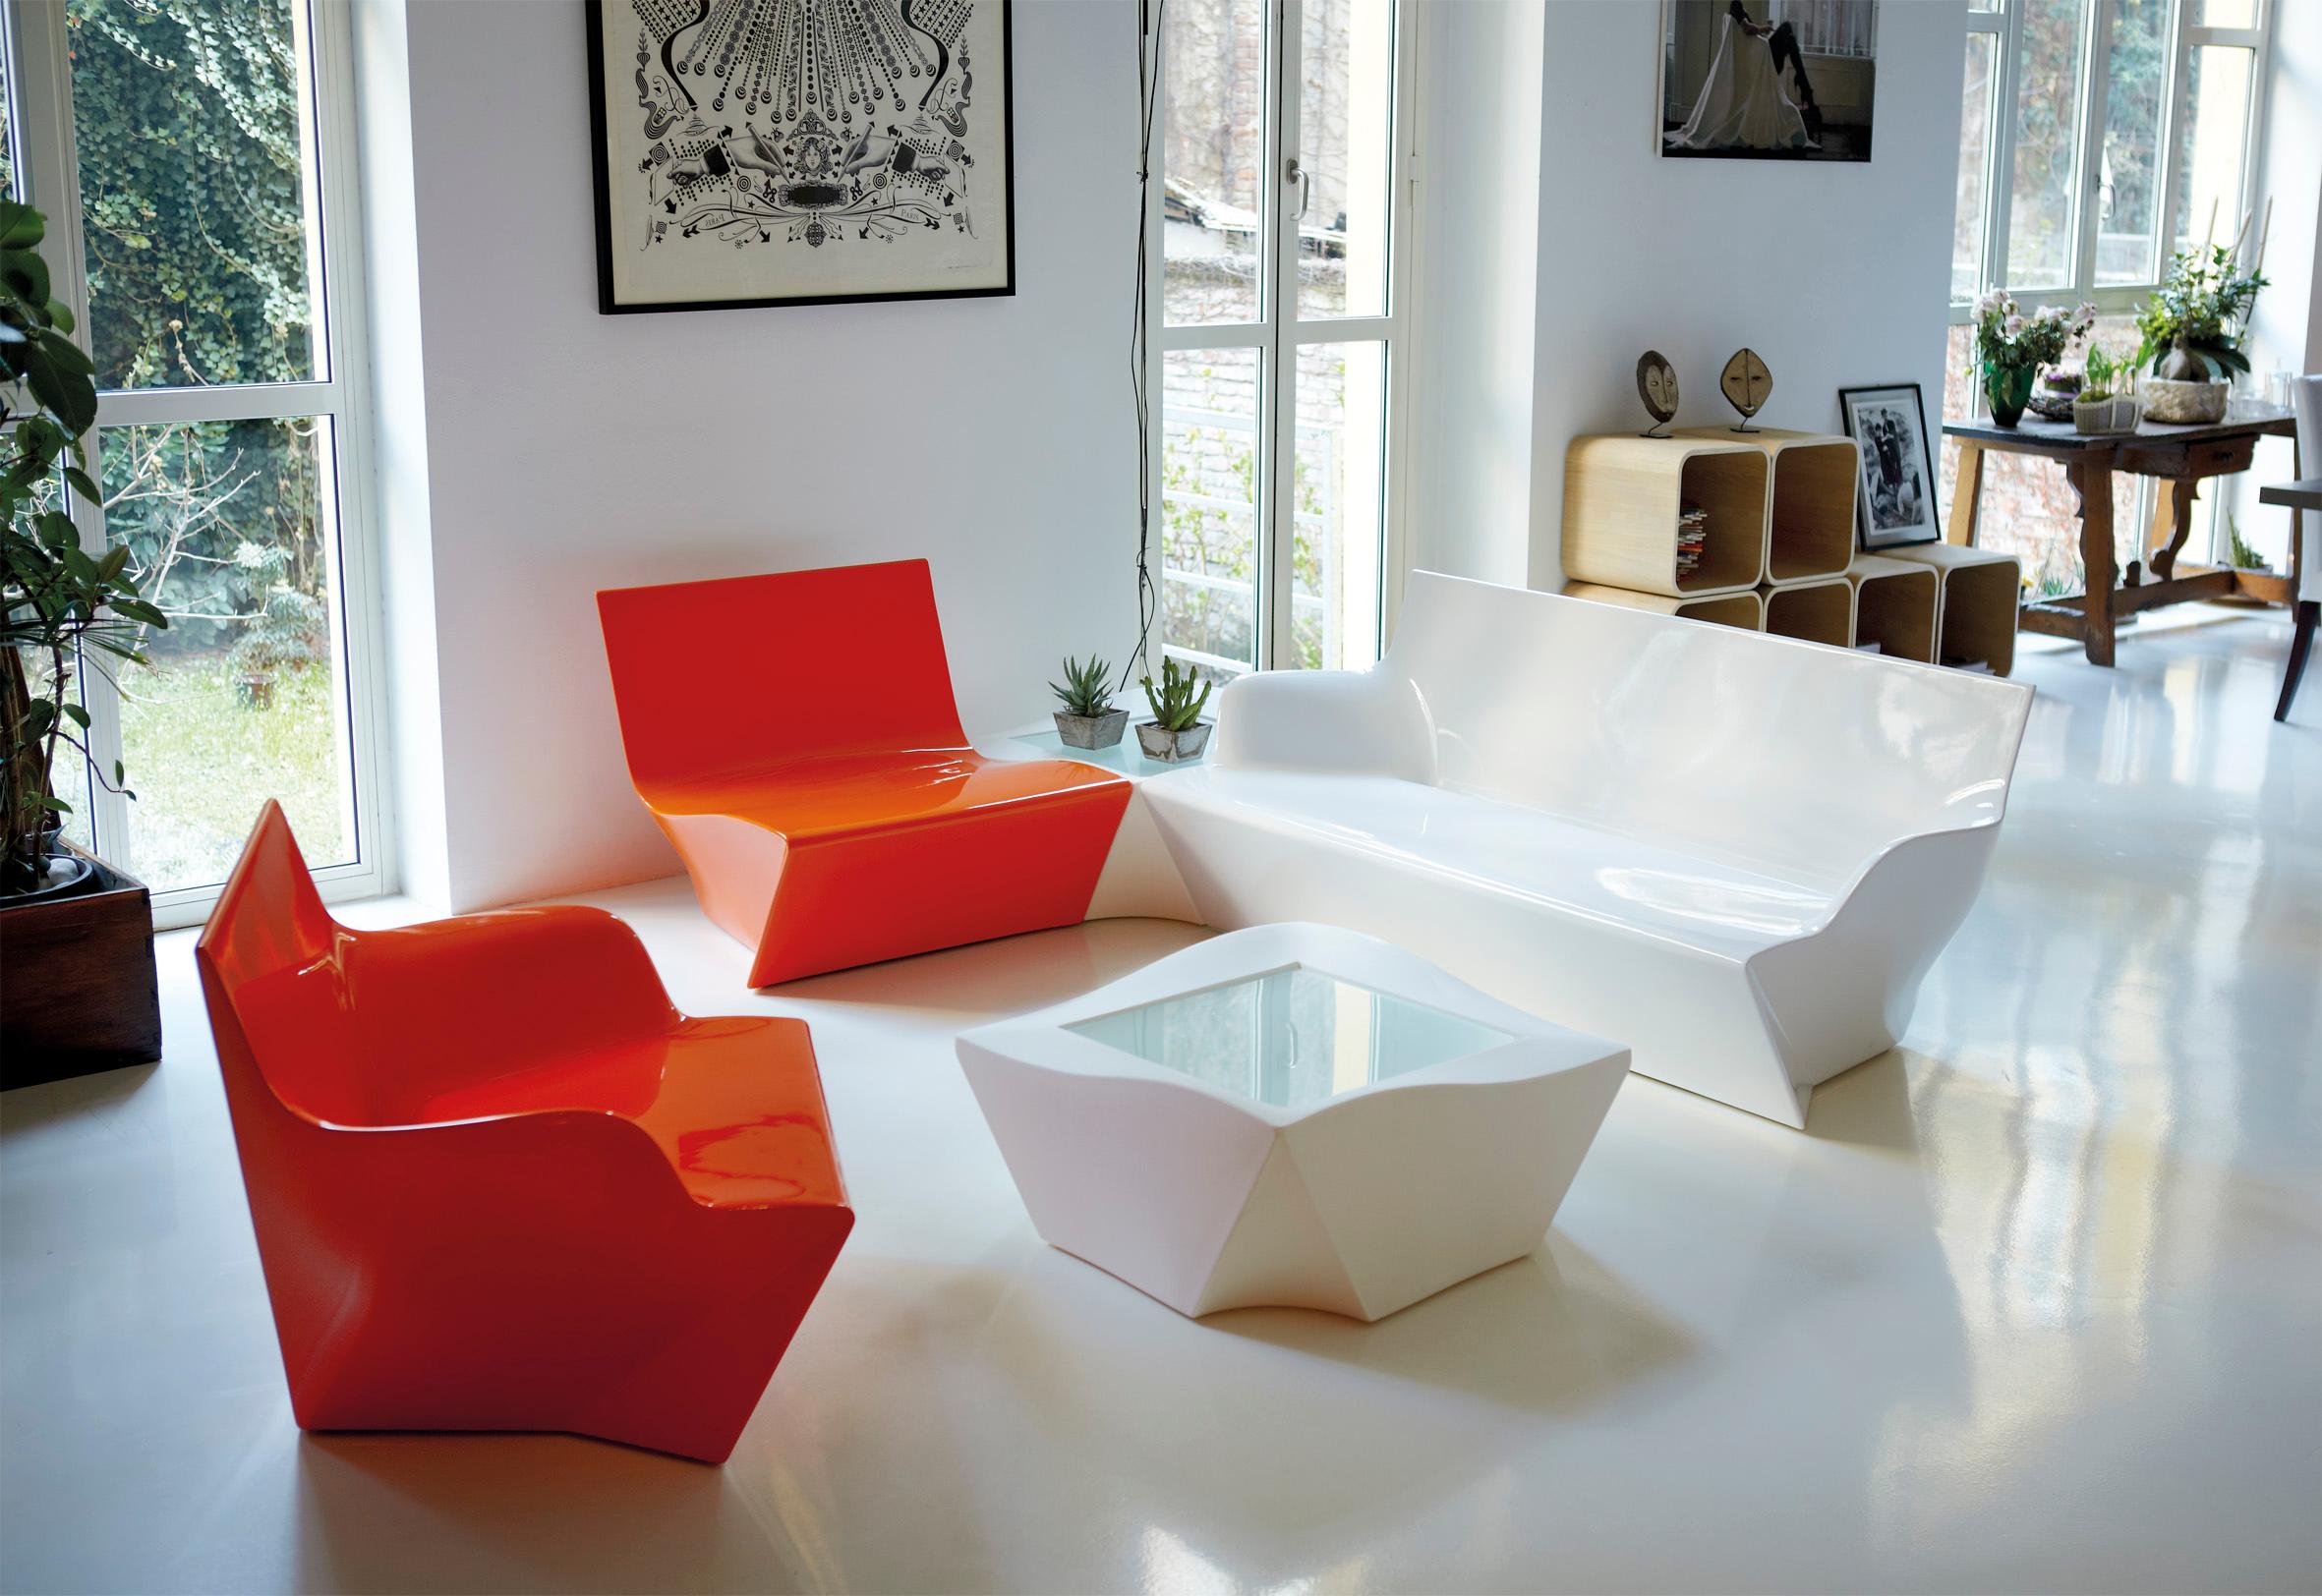 Milky White Kami Ichi Niedriger Stuhl von Marc Sadler
Abmessungen: T 75 x B 80 x H 70 cm. Sitzhöhe: 35 cm.
MATERIALEN: Polyethylen.
Gewicht: 15 kg.

Erhältlich in verschiedenen Farbvarianten. Dieses Produkt ist für die Verwendung im Innen- und